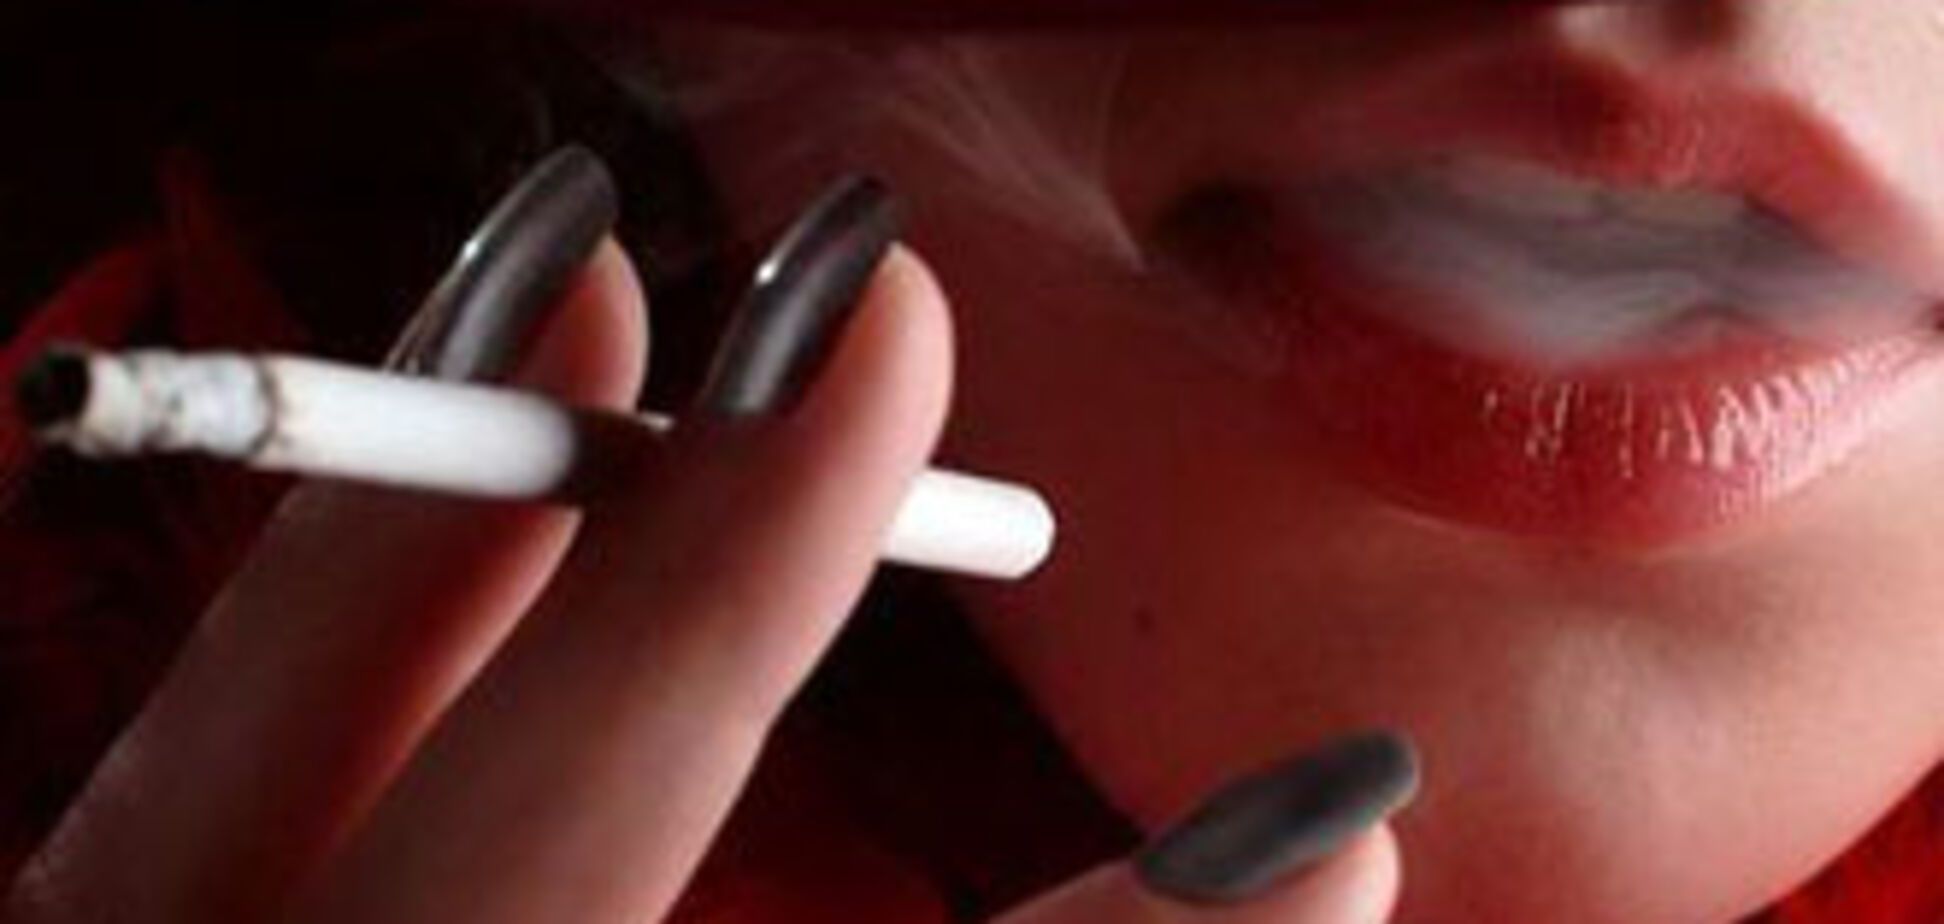 Курящие женщины чаще занимаются сексом